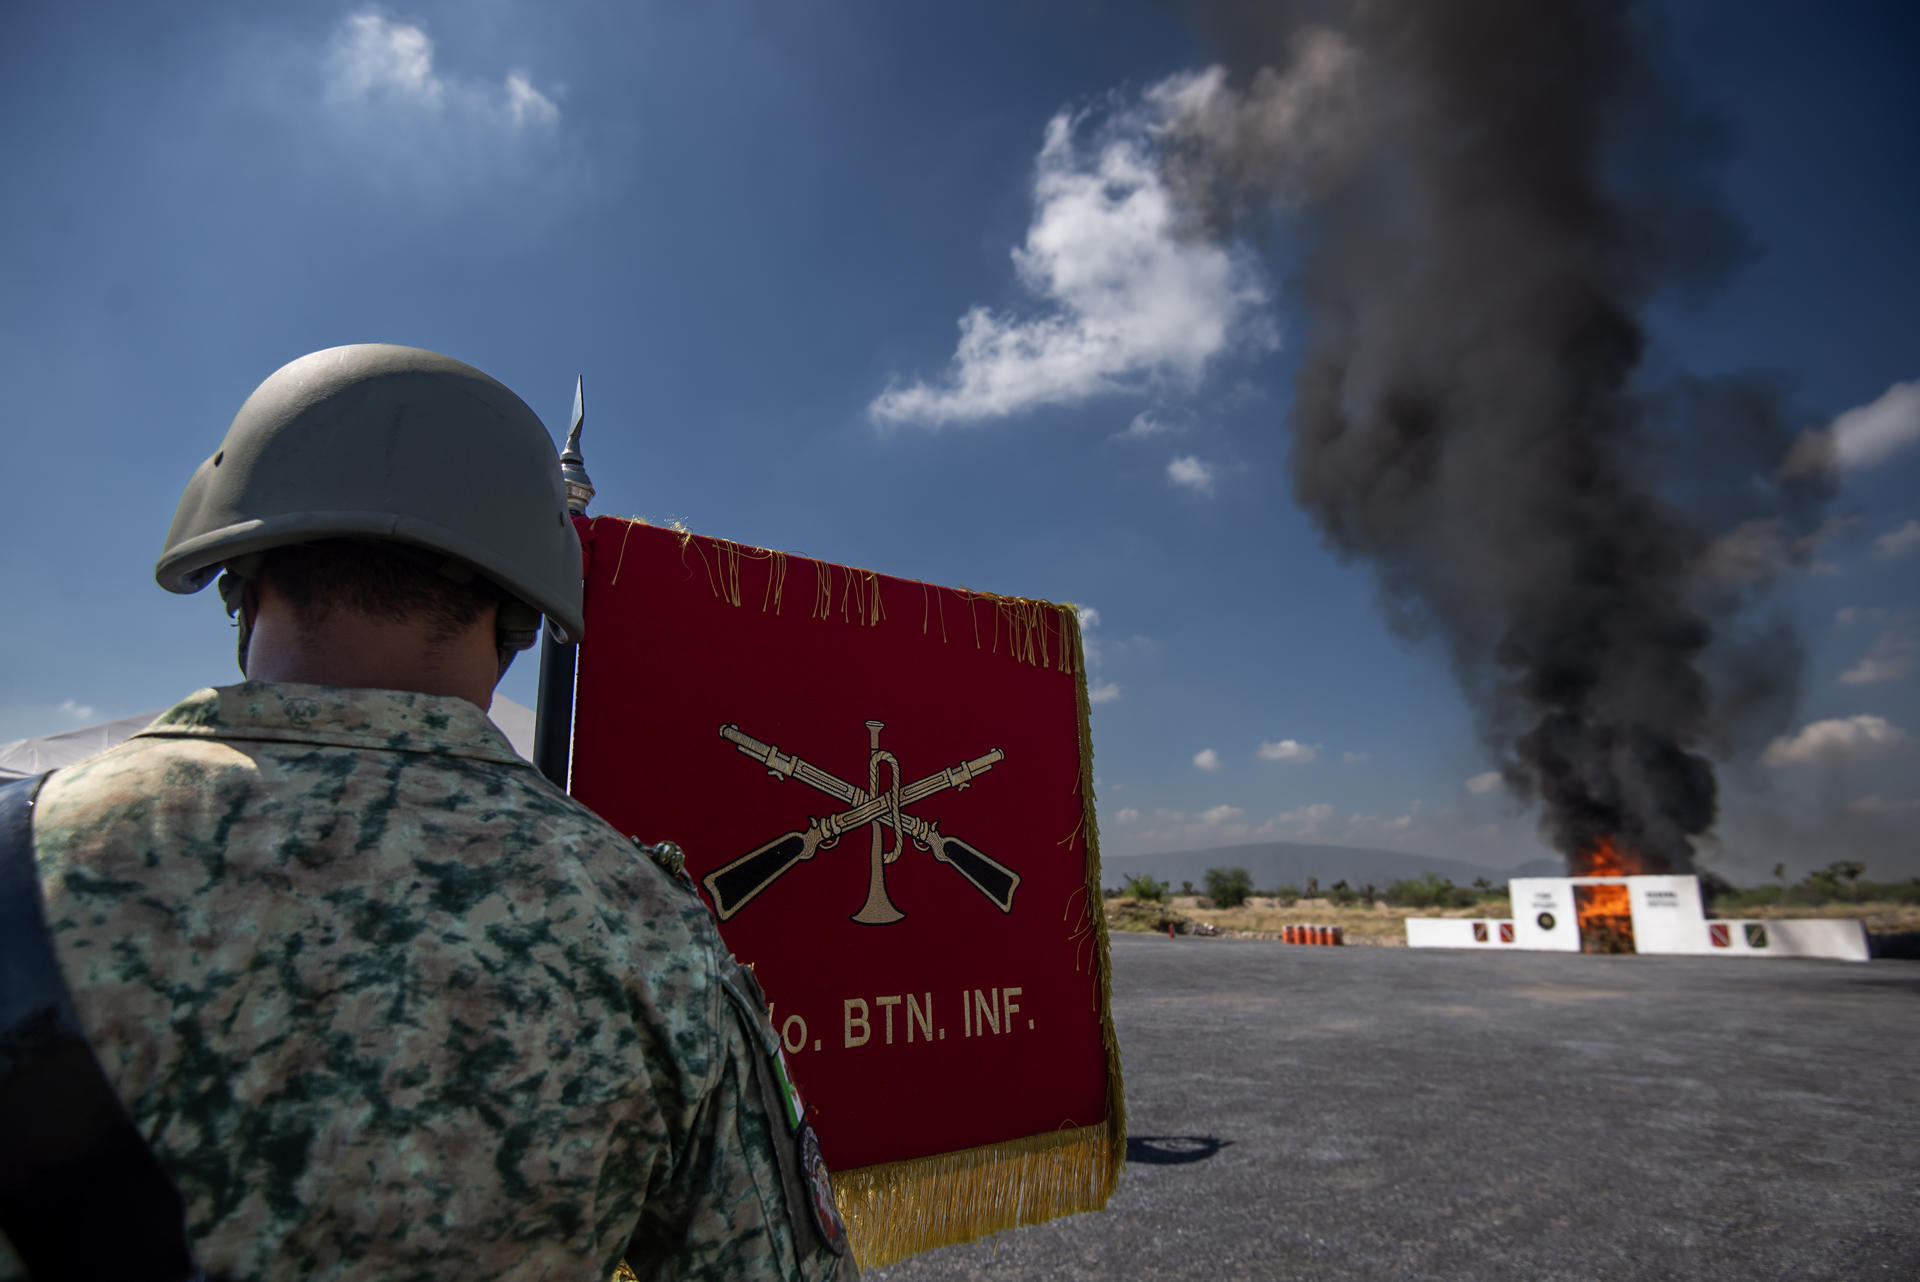 Soldados del Ejército Mexicano queman hoy un alijo decomisado de estupefacientes, en la VII Zona Militar en Apodaca, estado de Nuevo León (México). EFE/Miguel Sierra